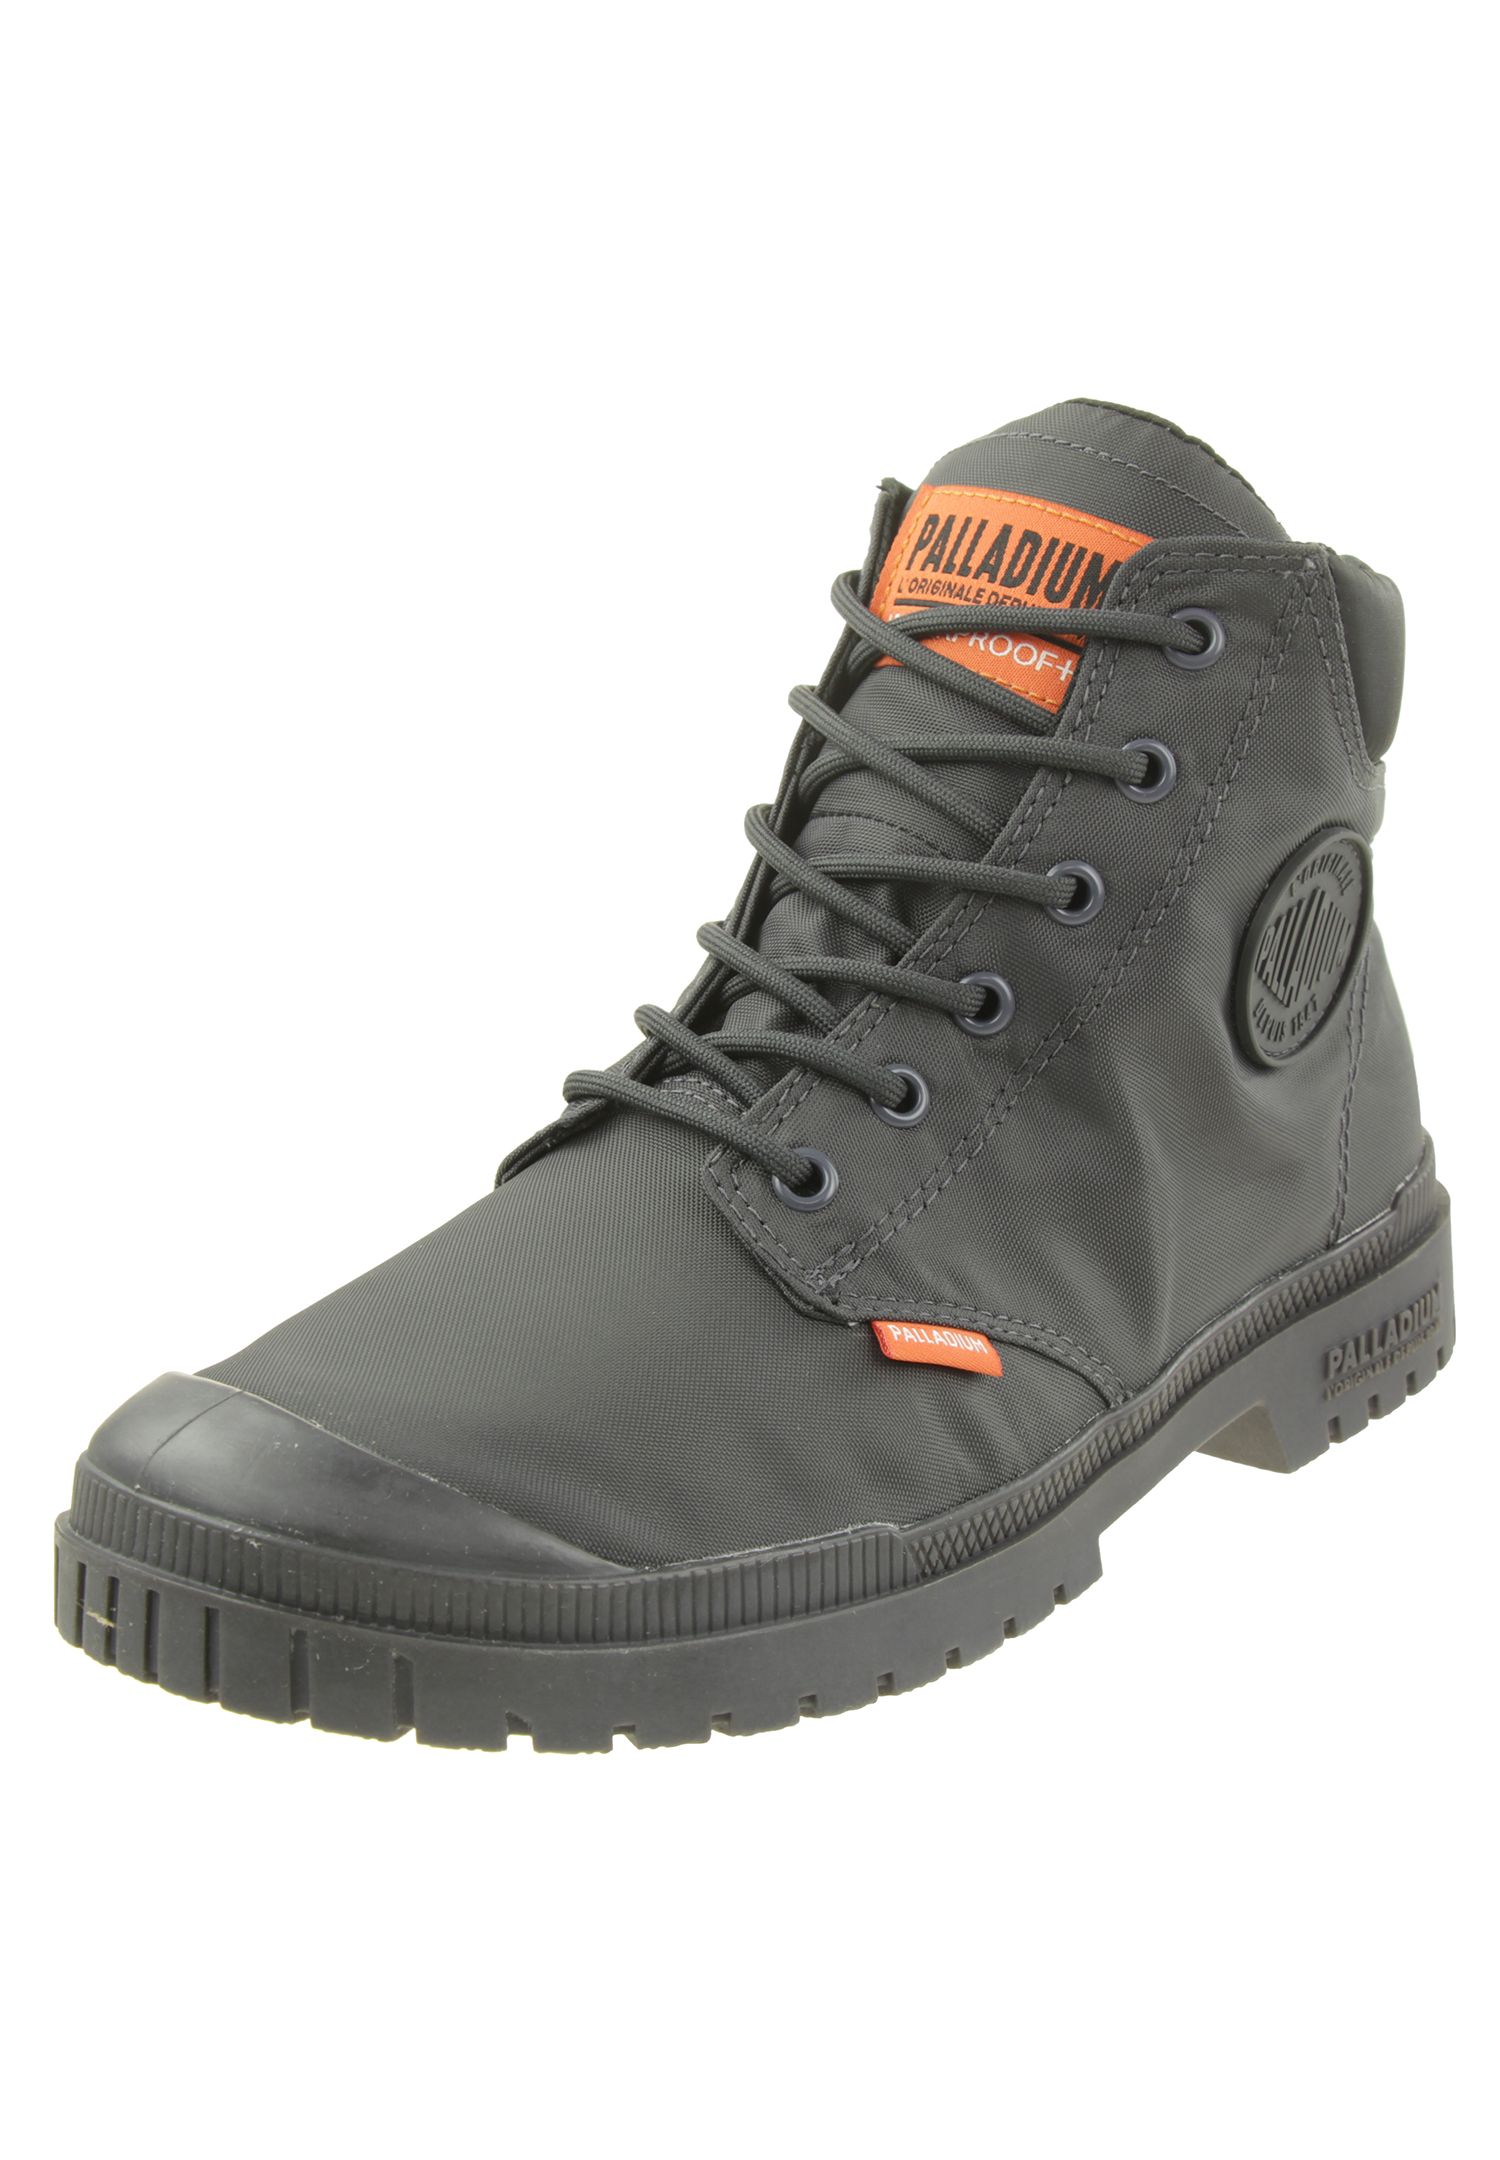 PALLADIUM Herren Pampa SP20 Cuff WP+  Ankle Boots Stiefelette 76835 021 grau